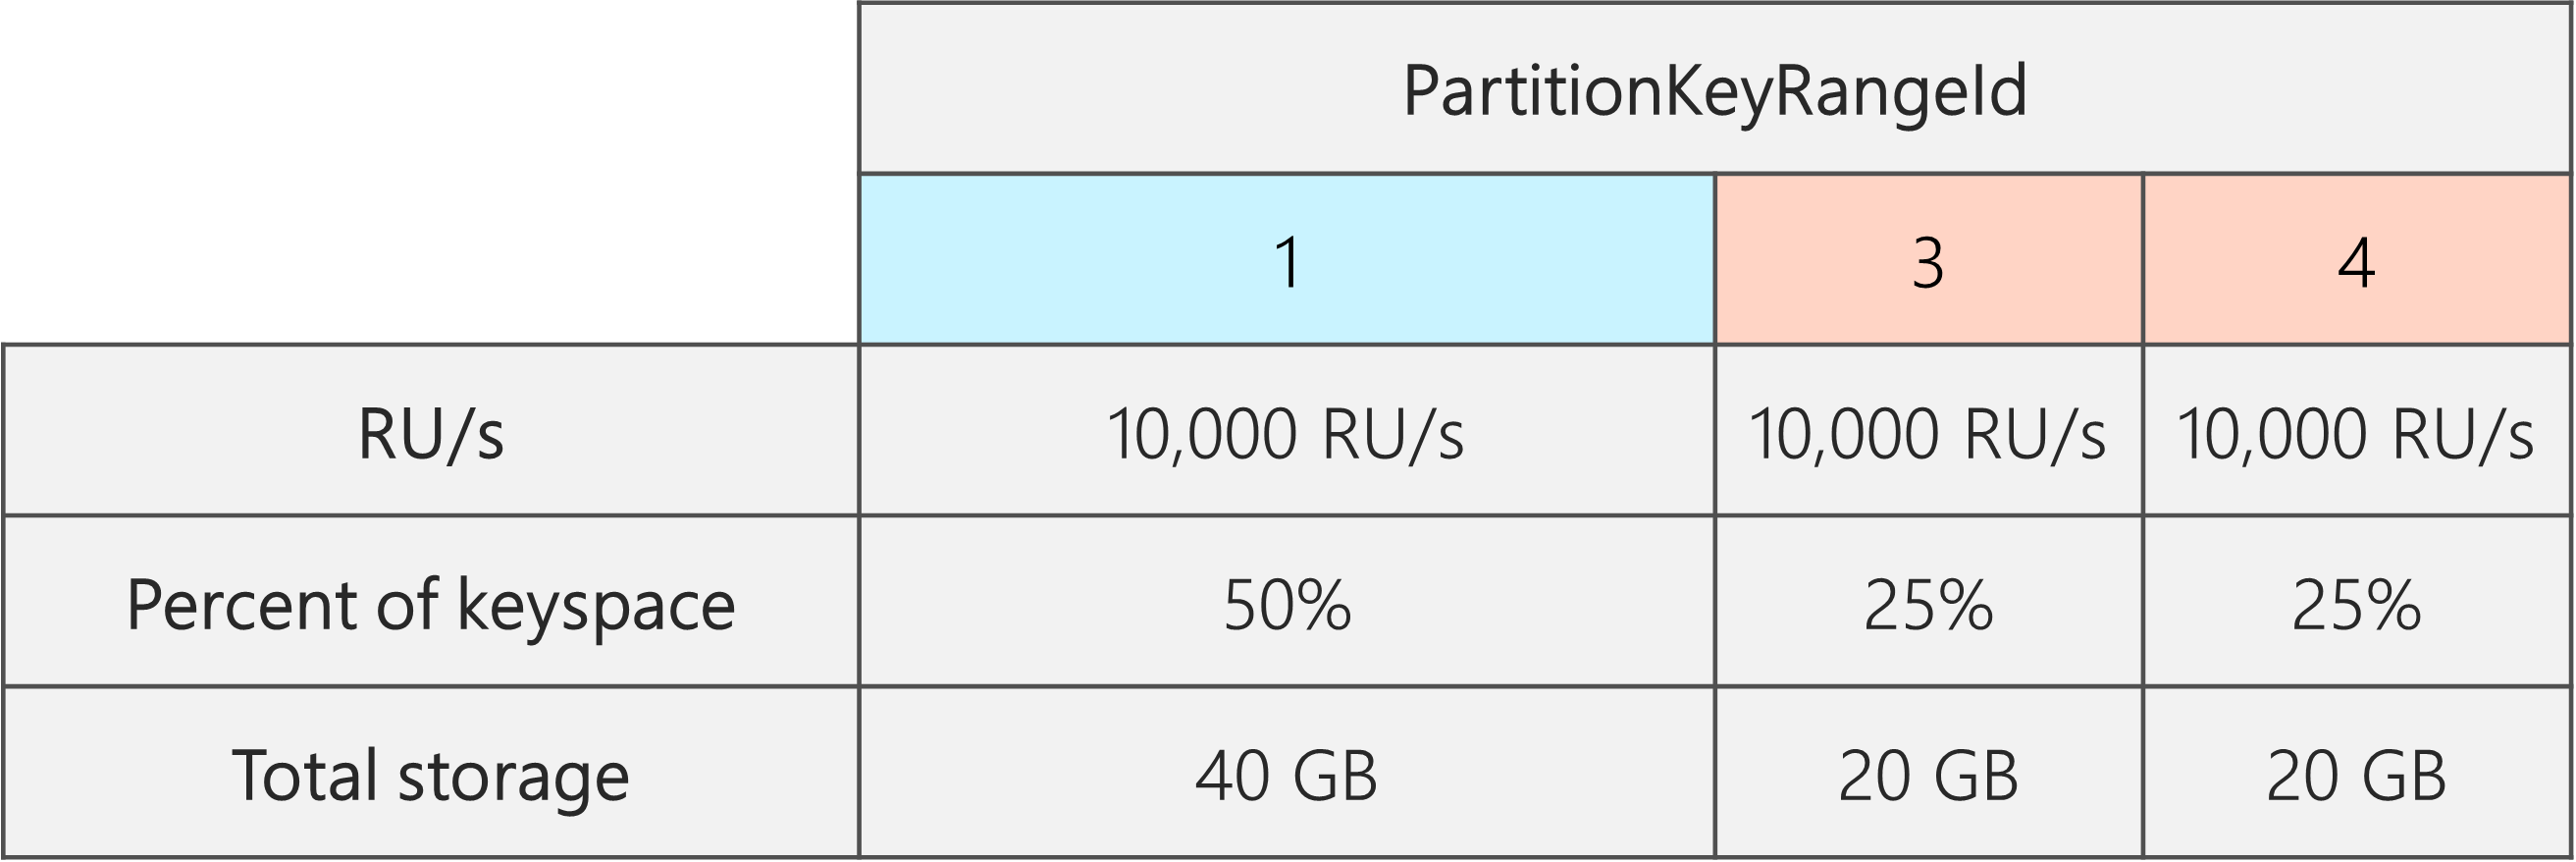 分割後、PartitionKeyRangeId は 3 つあり、それぞれ 10,000 RU/秒です。ただし、PartitionKeyRangeId の 1 つには合計キースペースの 50% (40 GB) があり、2 つの PartitionKeyRangeId には合計キースペースの 25% (20 GB) があります